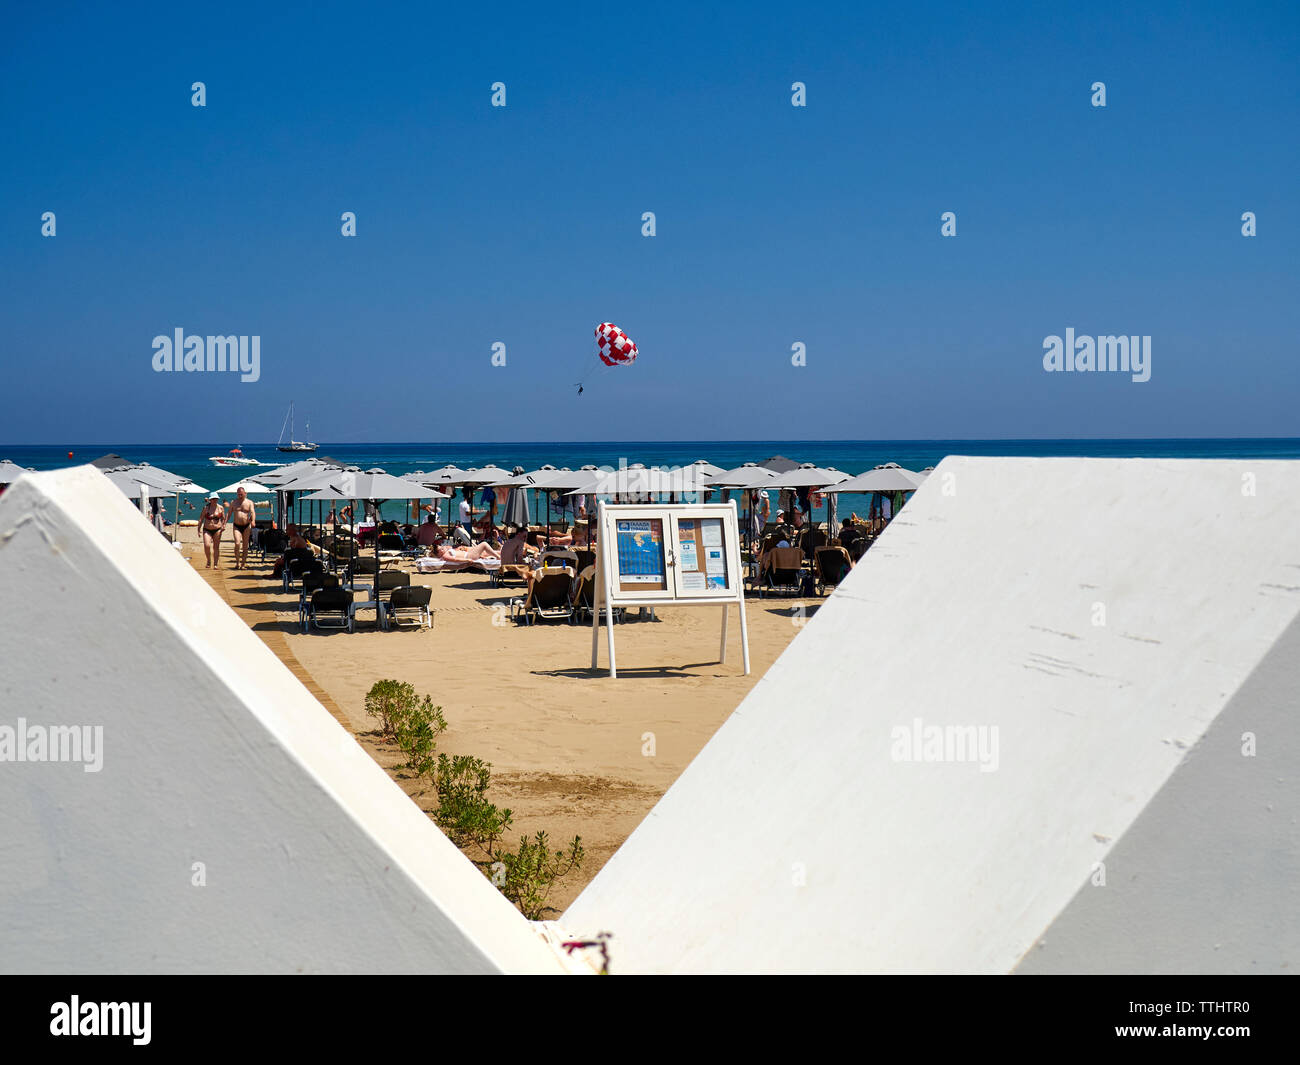 Le parachute ascensionnel sur la plage, Rethymno (Rethymnon, Crète/Rethimno), îles grecques, Grèce, Europe Banque D'Images